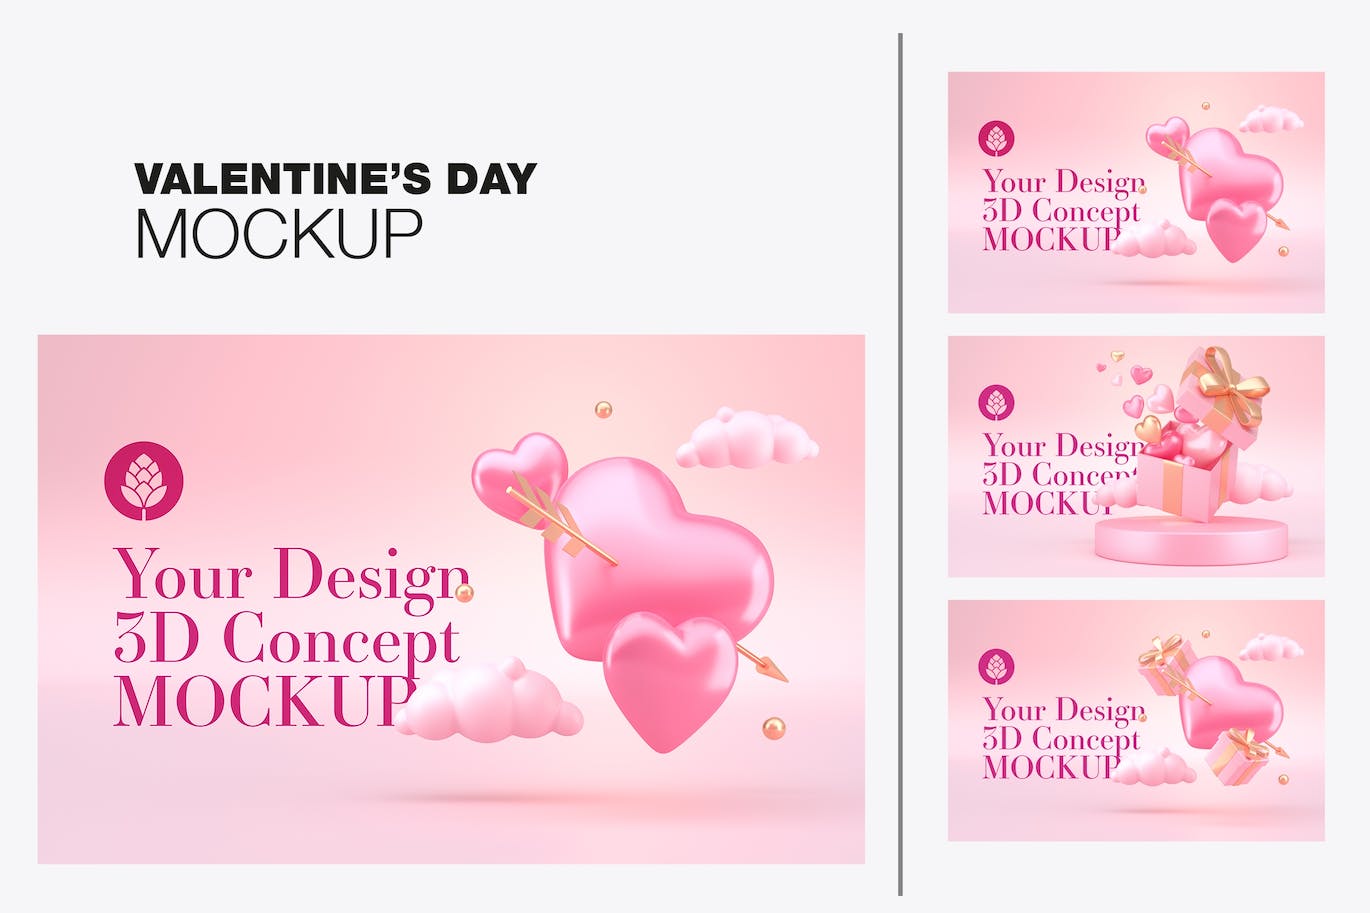 情人节3D礼品装饰概念样机图psd素材 Set Valentine’s Day Concept Mockup 图片素材 第1张